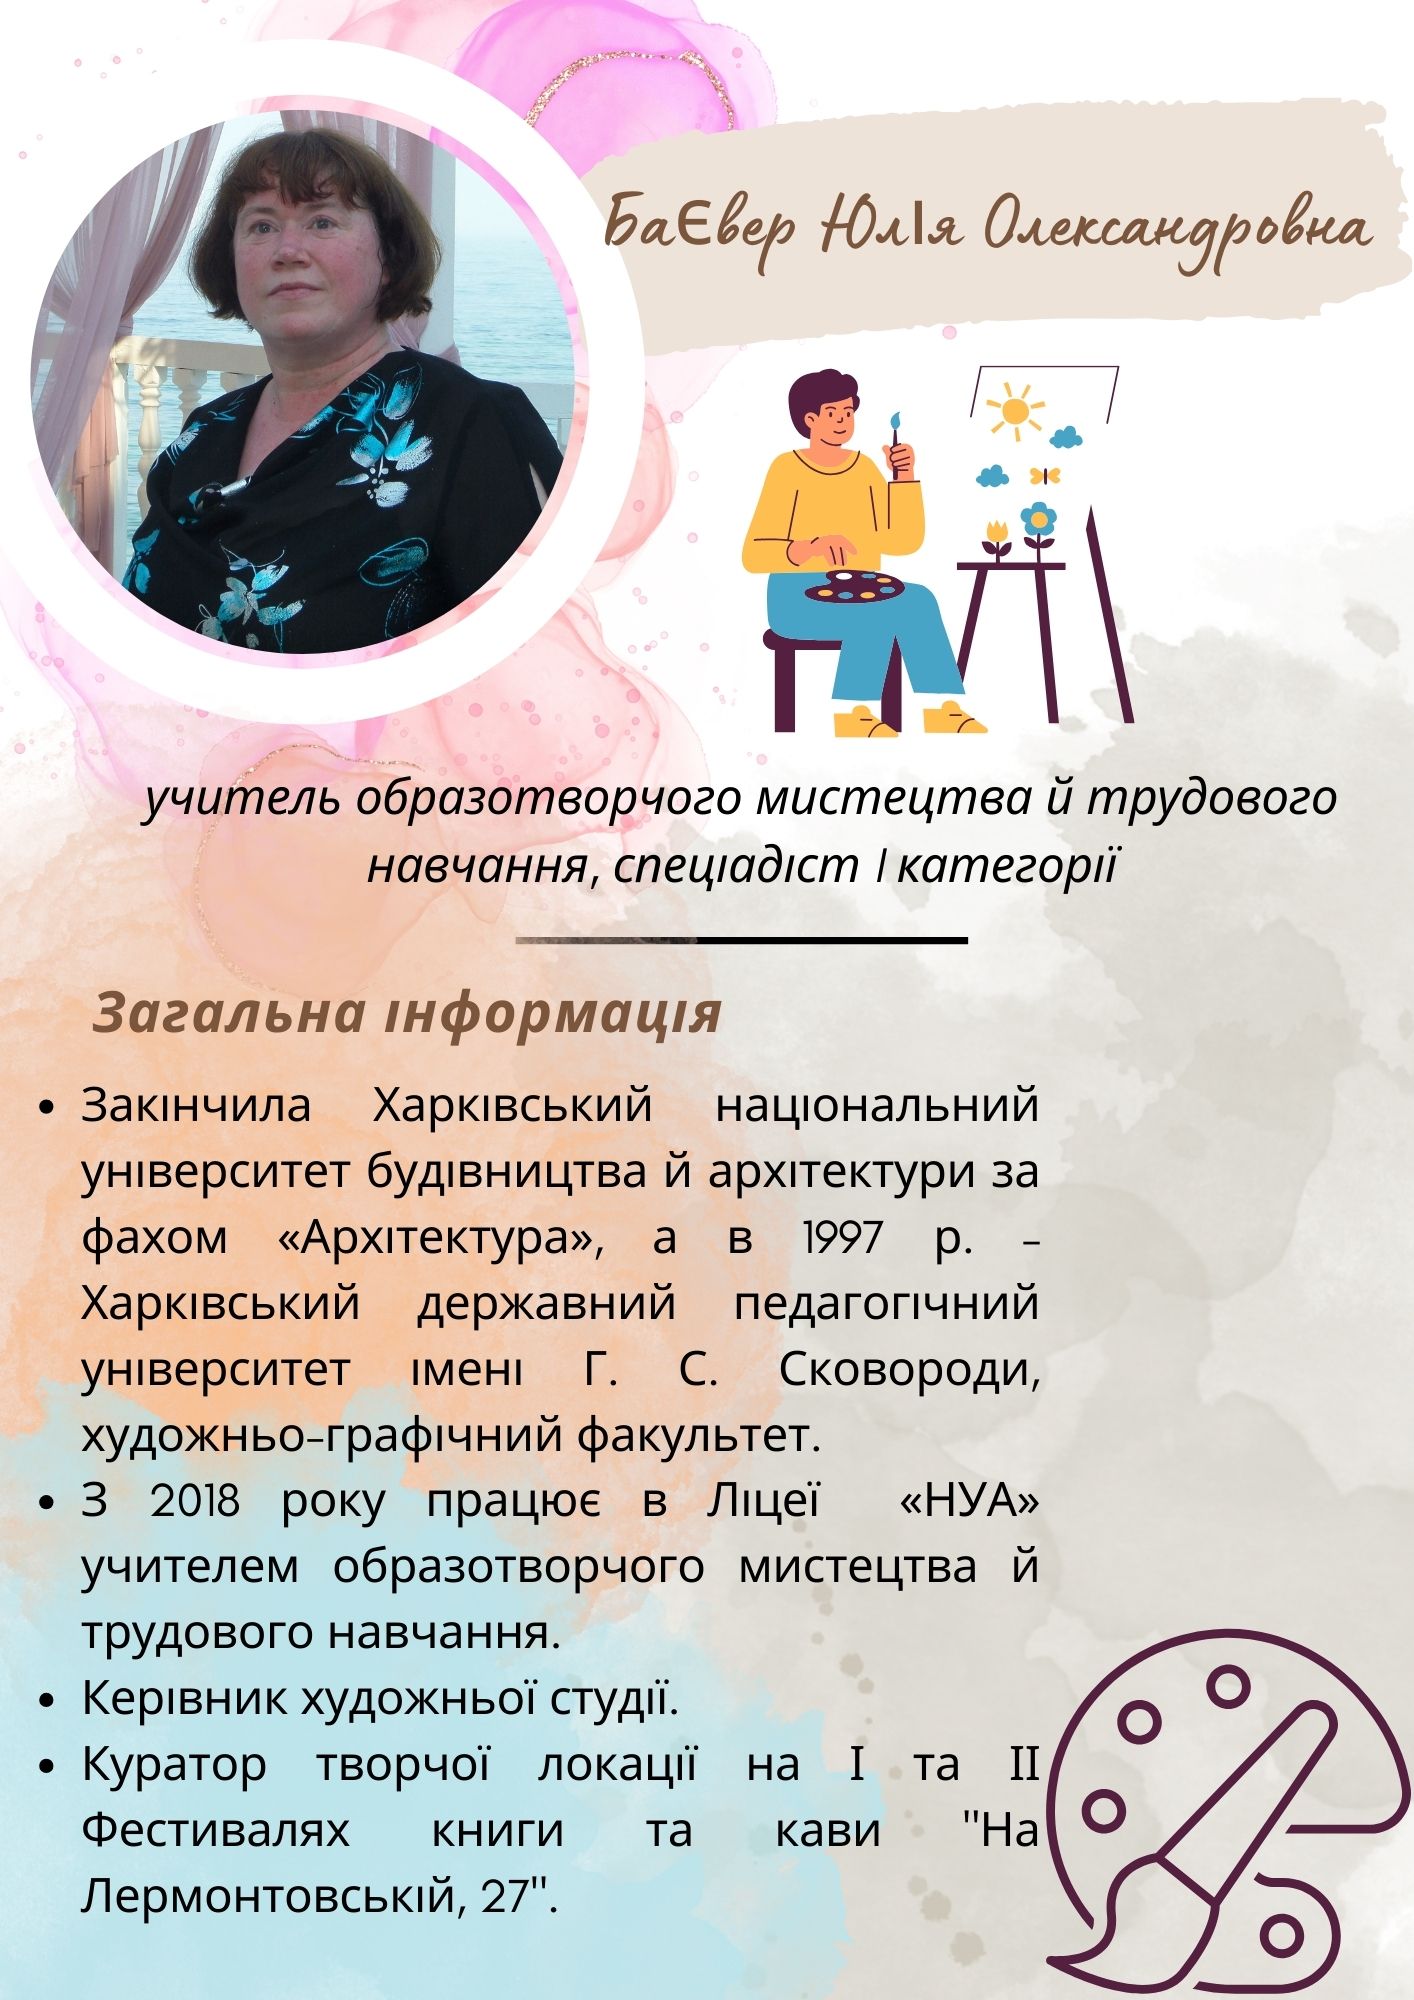 Баєвер Юлія Олександровна, учитель образотворчого мистецтва й трудового навчання, среціадіст I категорії.